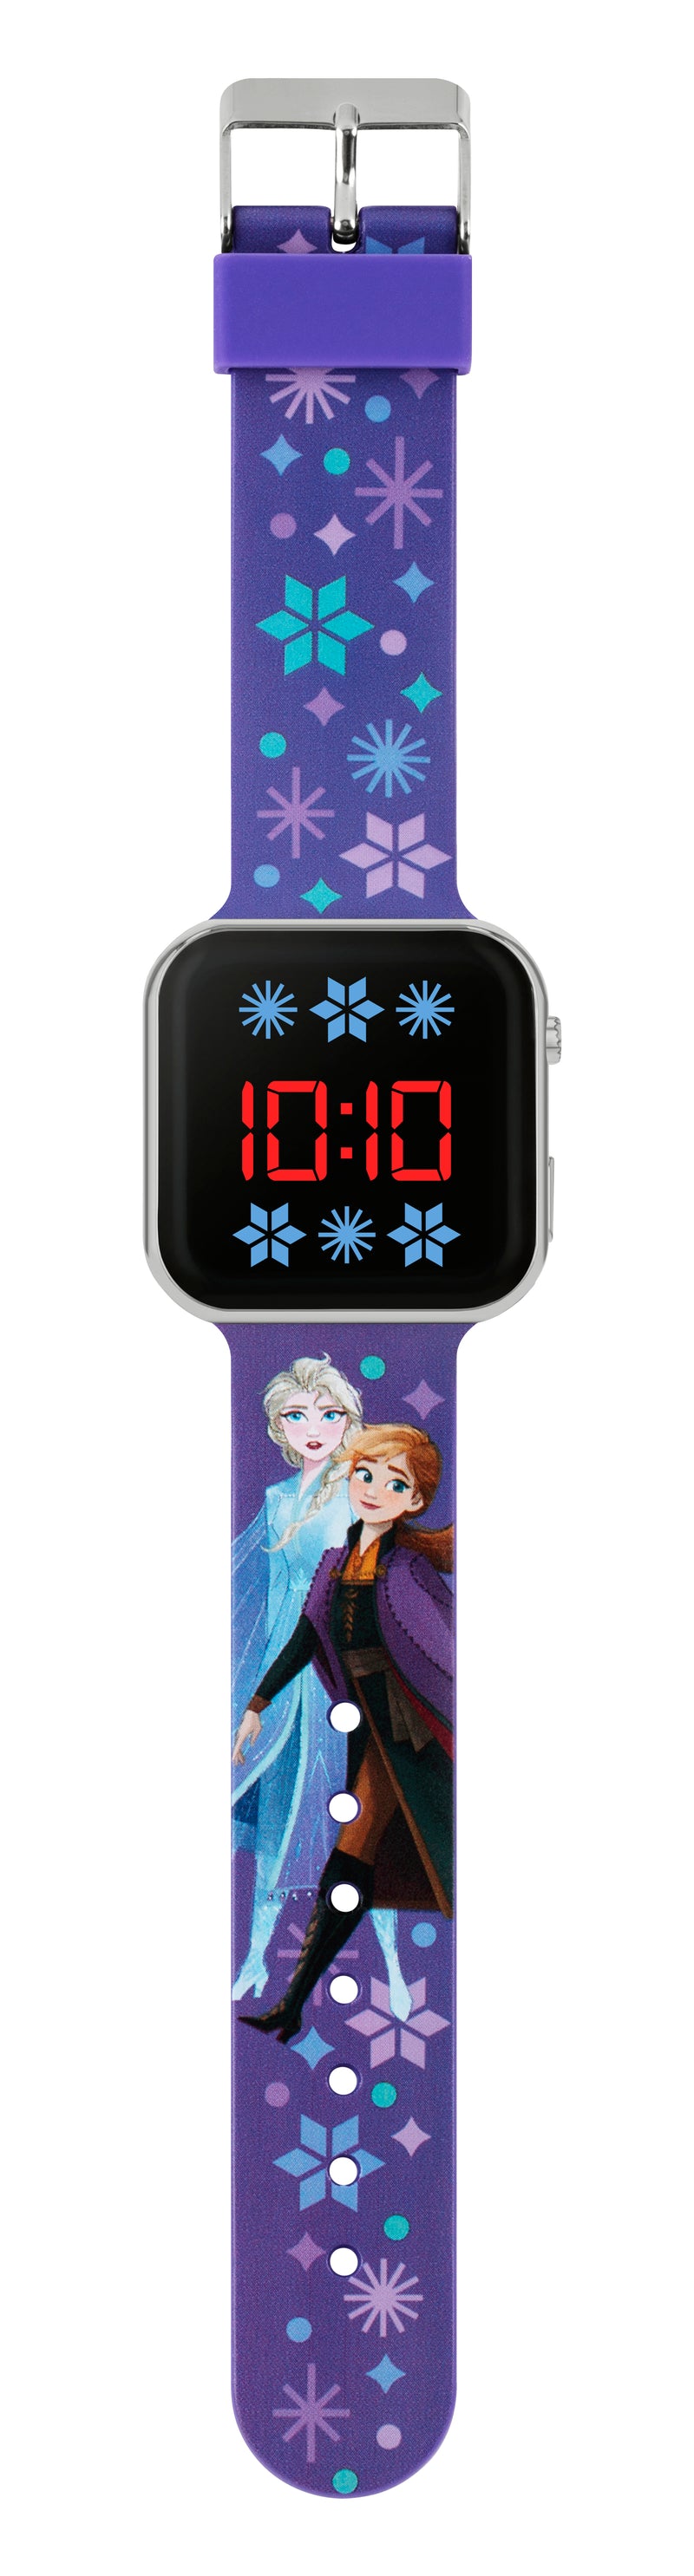 Disney Frozen LED Digital Watch